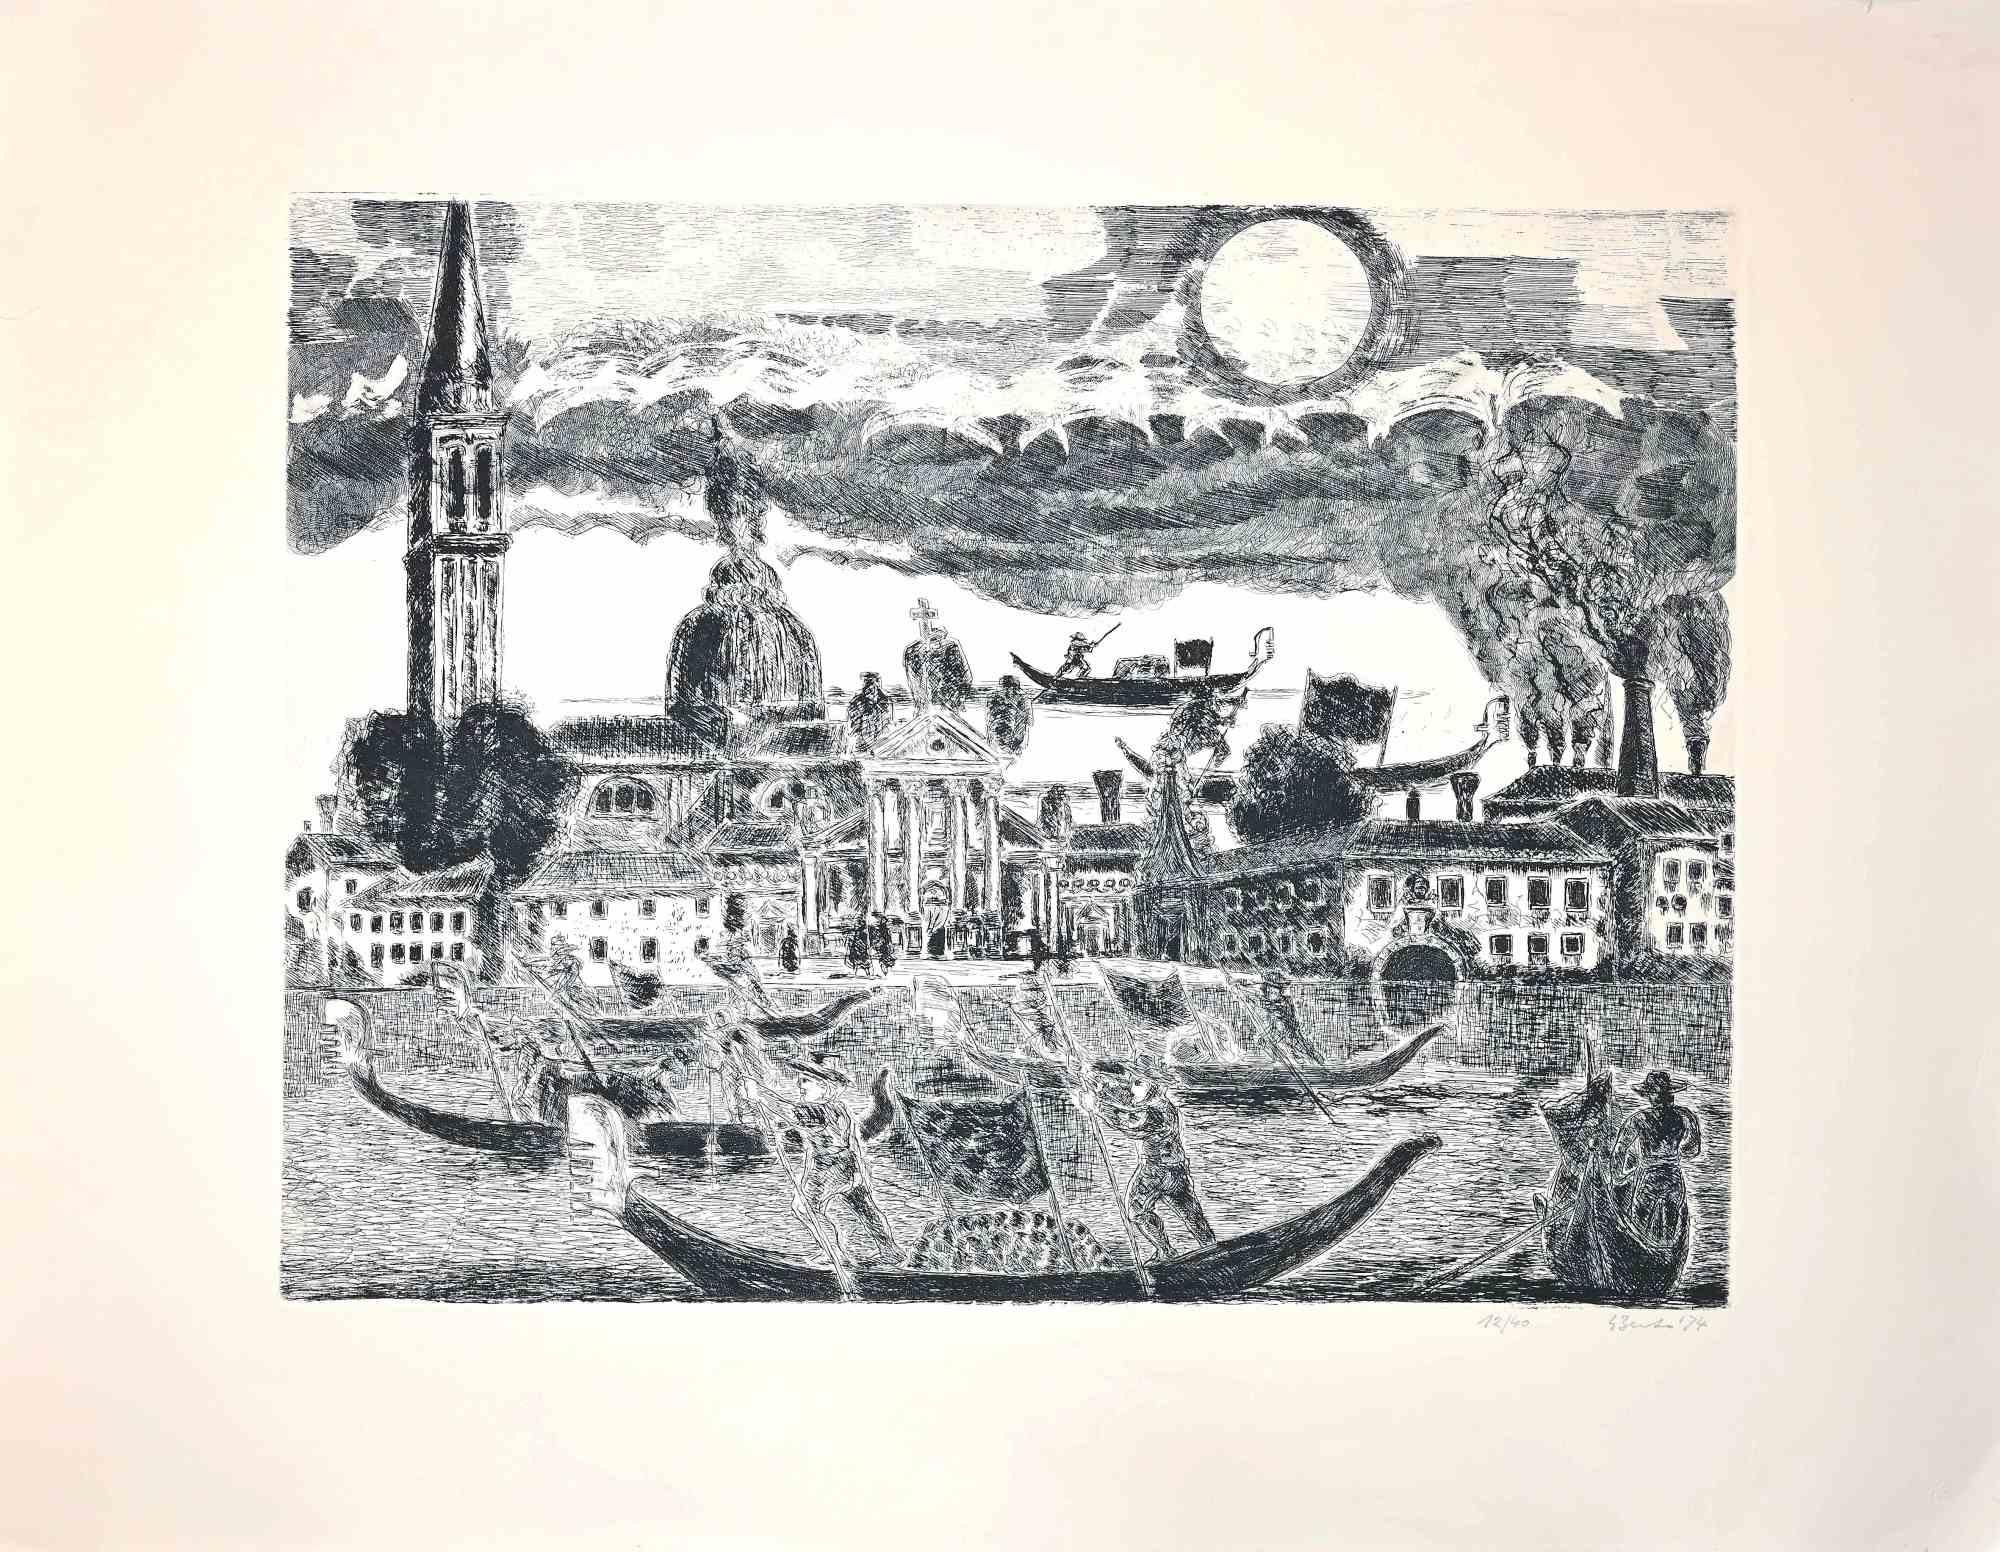 Gondoliere in Venedig ist eine Originalradierung von Gianpaolo Berto aus dem Jahr 1974.

Limitierte Auflage von 40 nummerierten und signierten Exemplaren (12/40).

Guter Zustand mit einem Passepartout aus weißem Karton (70x100 cm).

Gianpaolo Berto